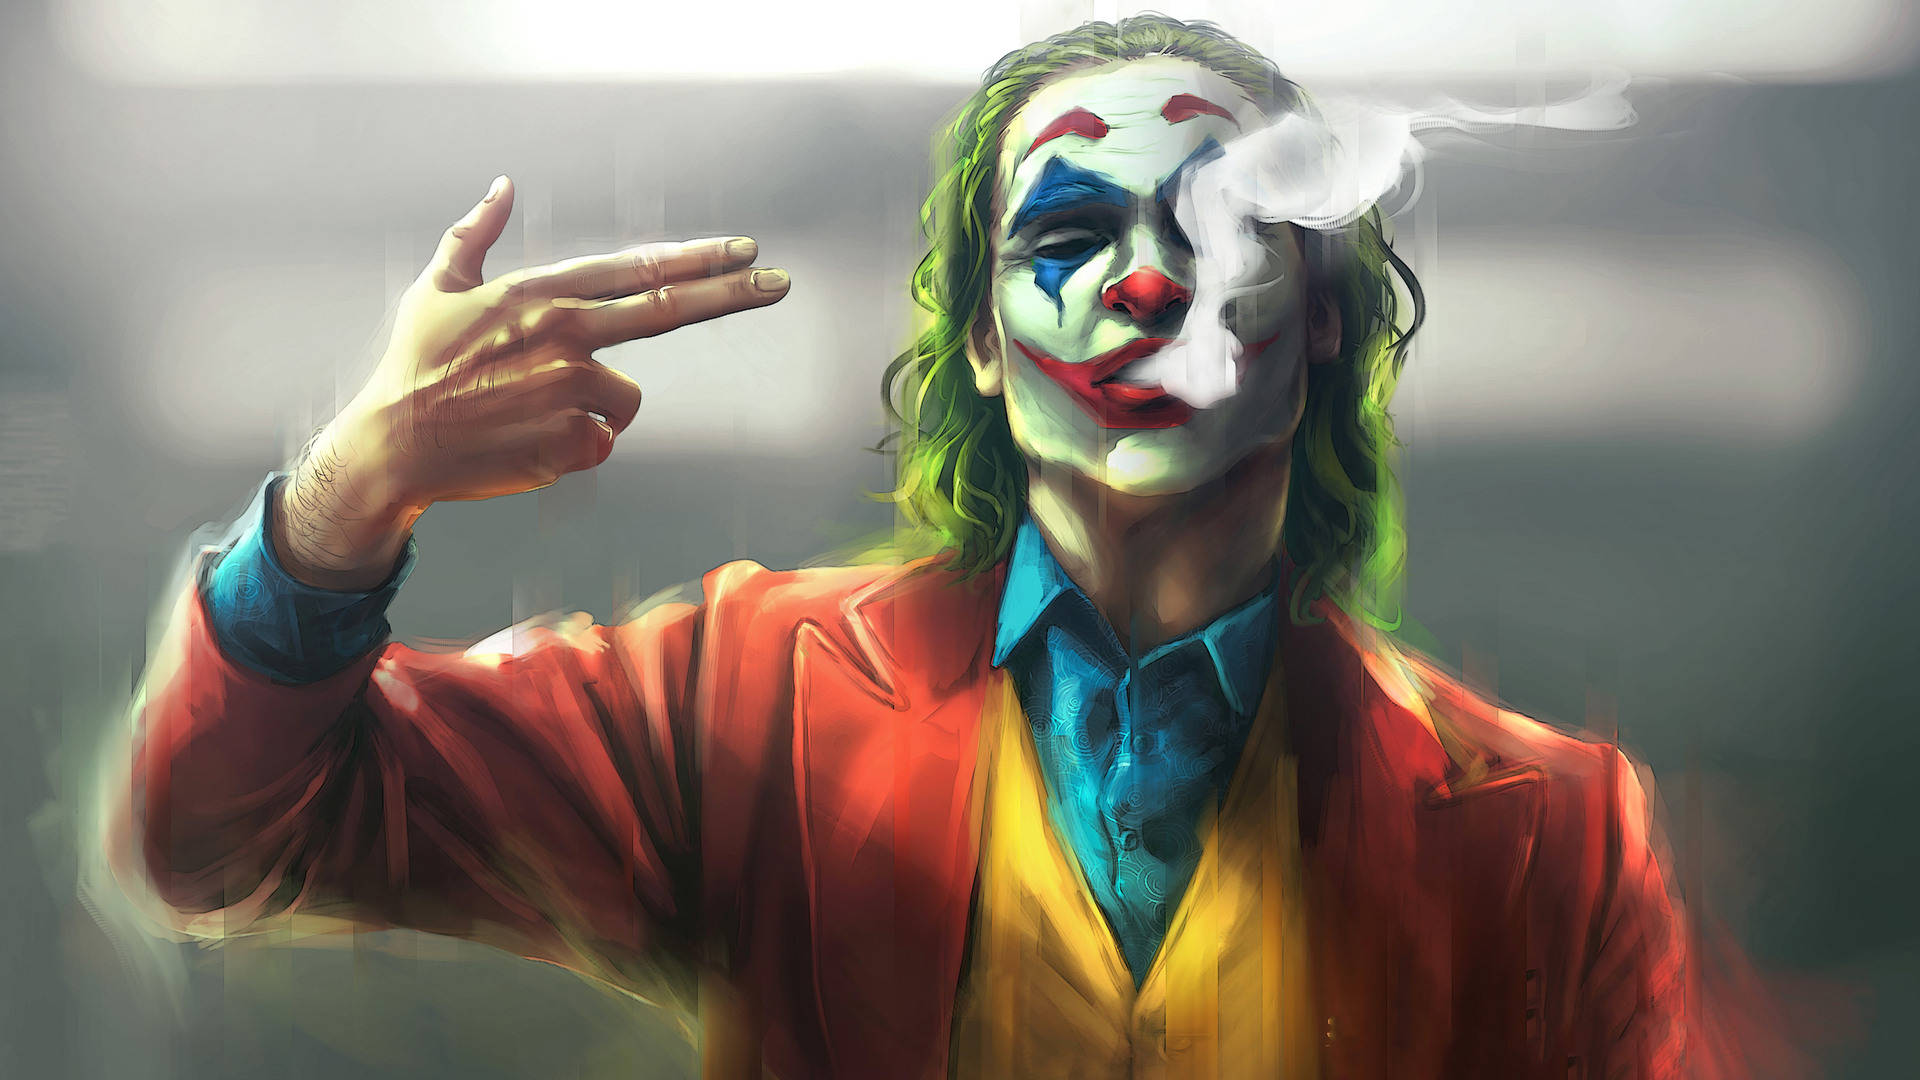 Cool Picture Joker Art